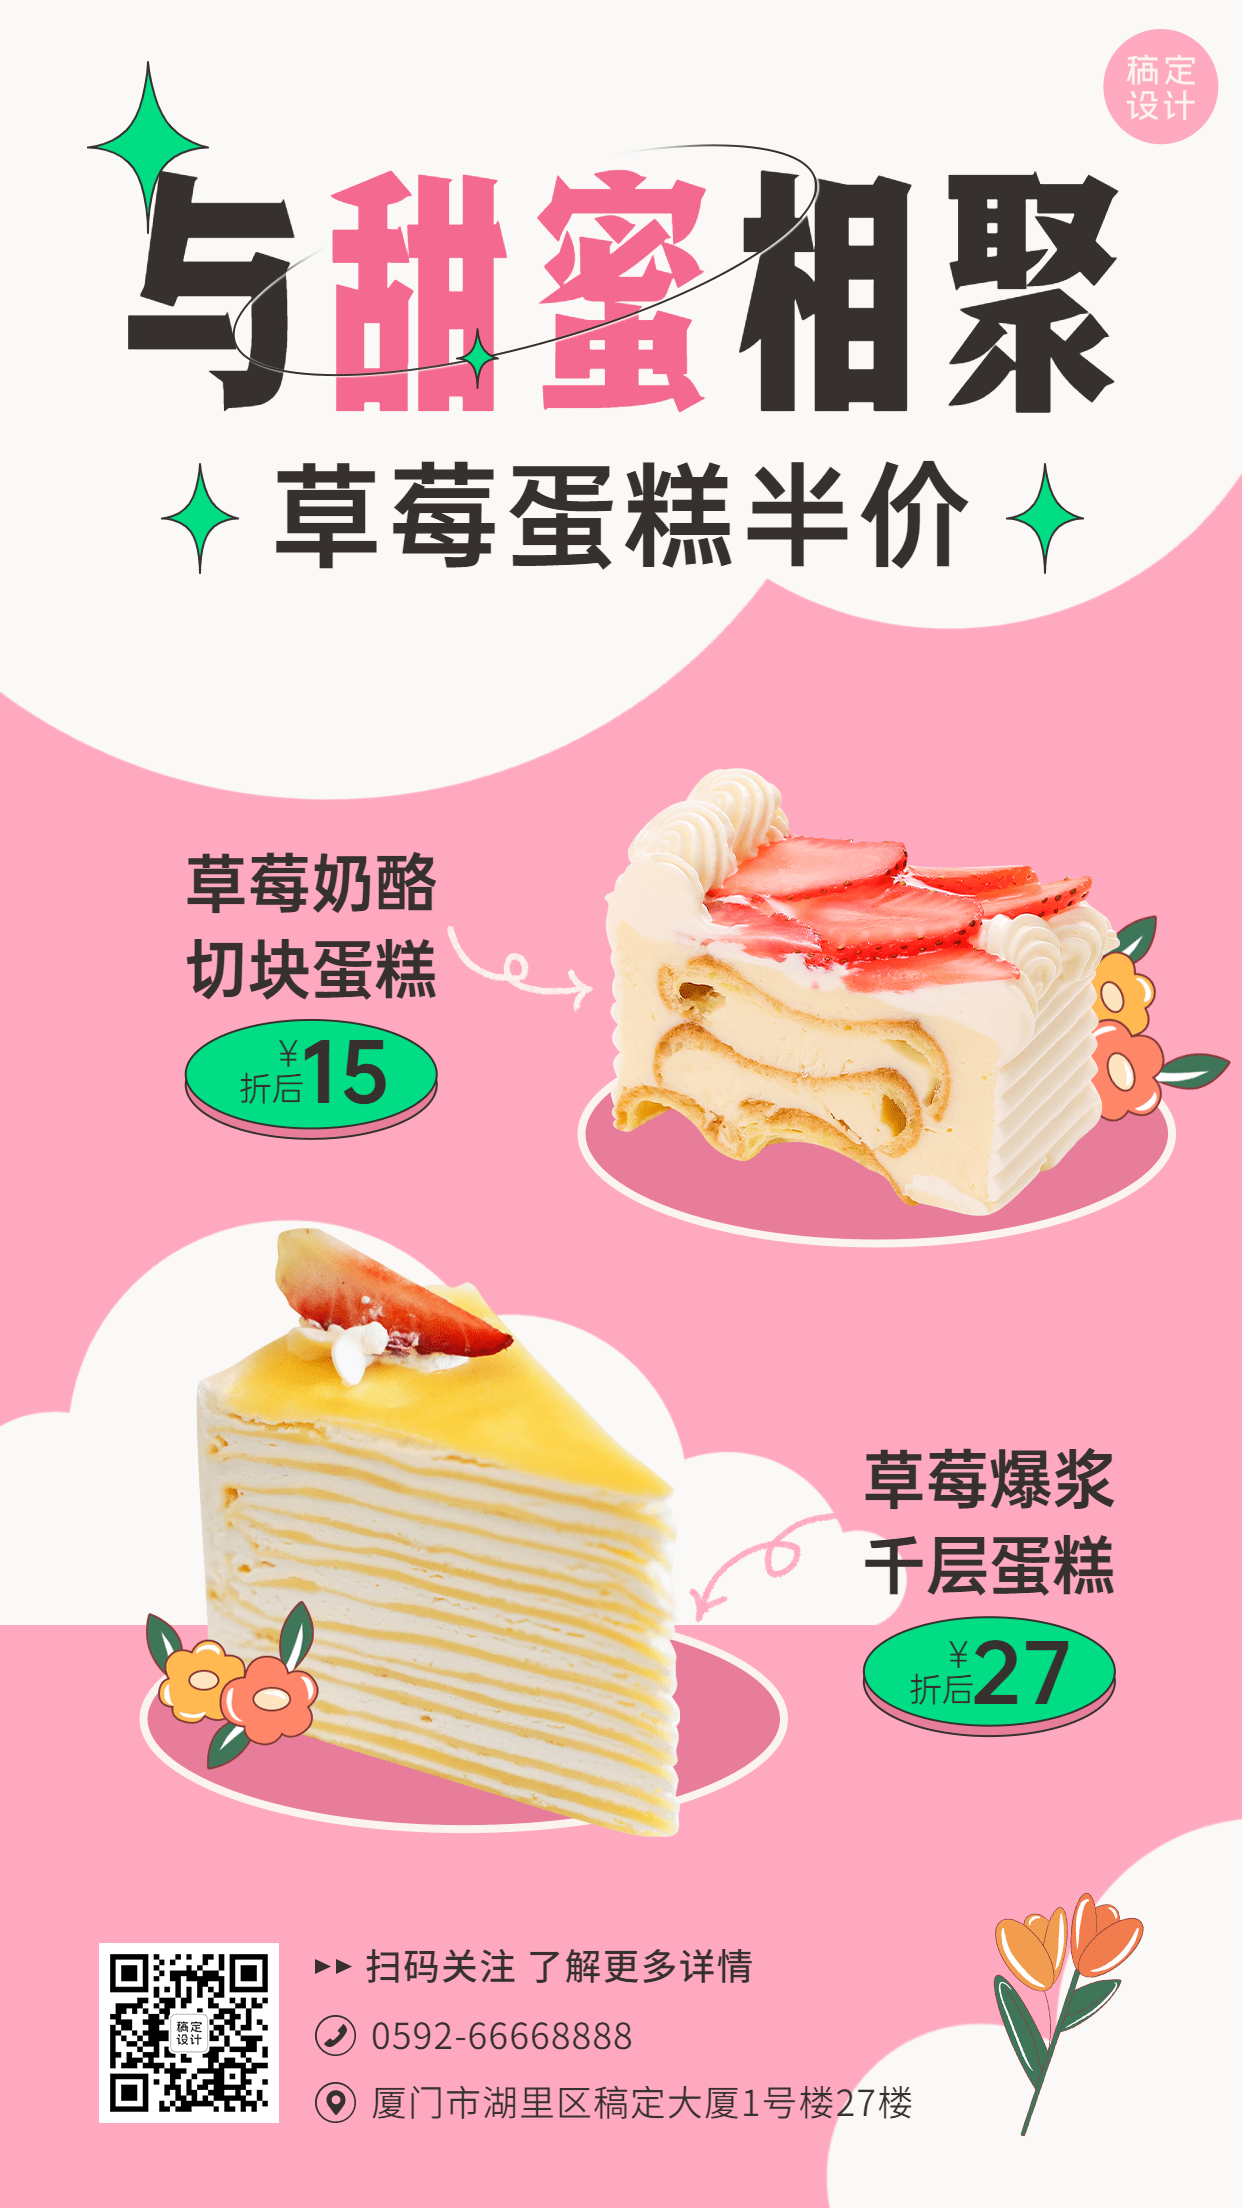 妇女节女神节蛋糕烘焙产品营销餐饮手机海报预览效果